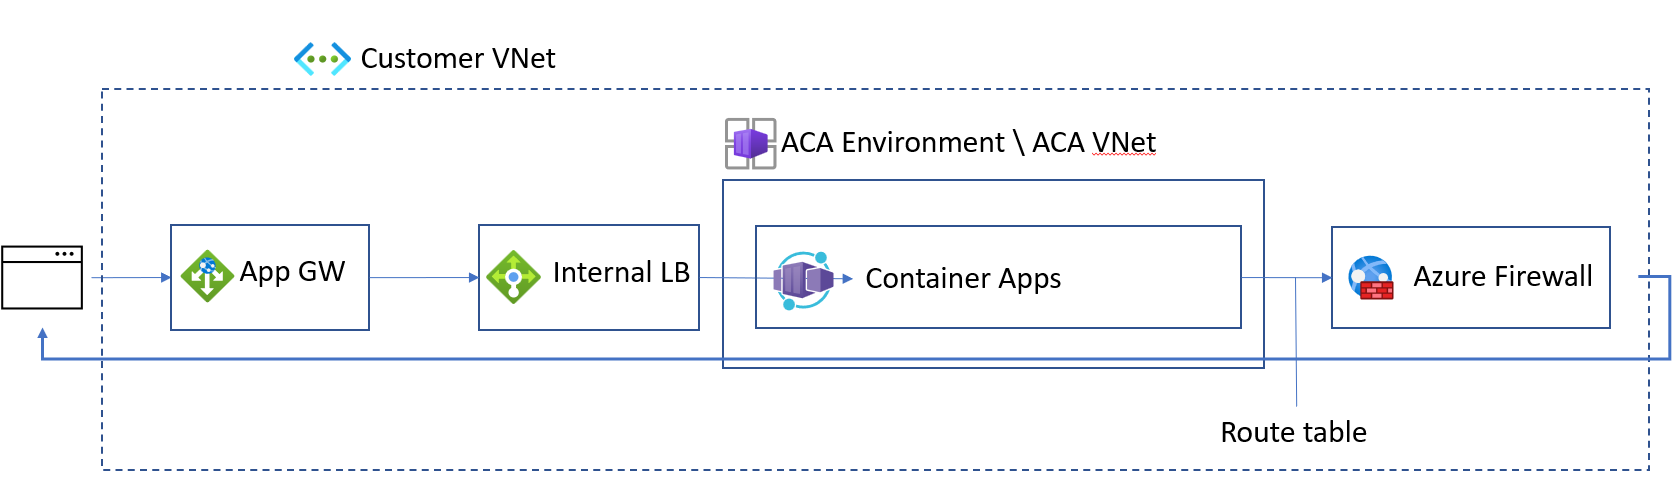 Diagrama de cómo bloquear completamente la red para Container Apps.